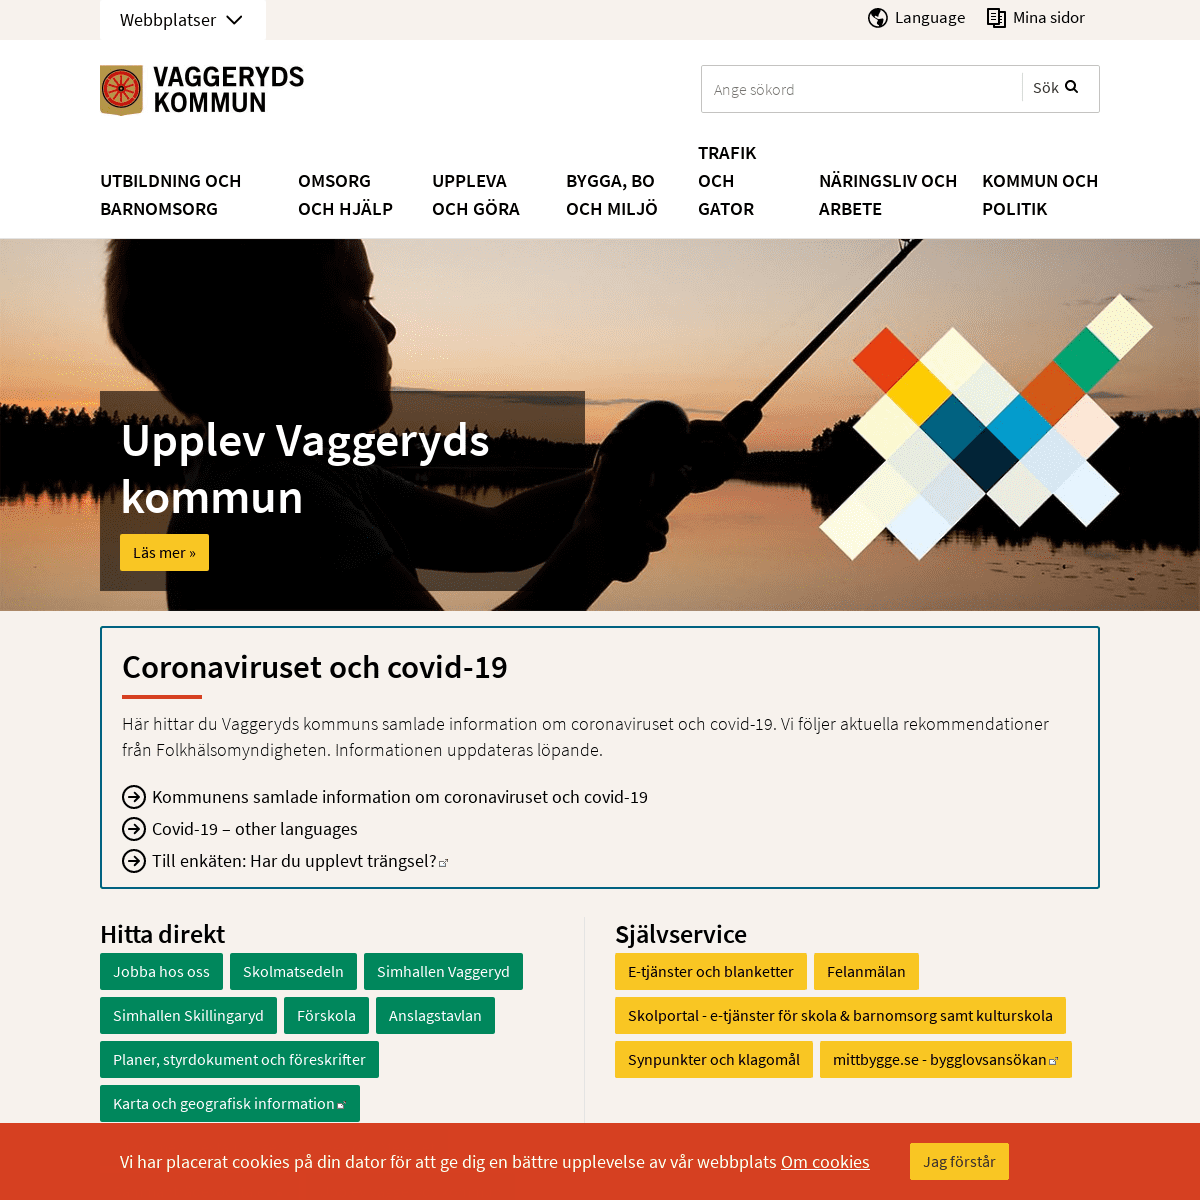 A complete backup of https://vaggeryd.se